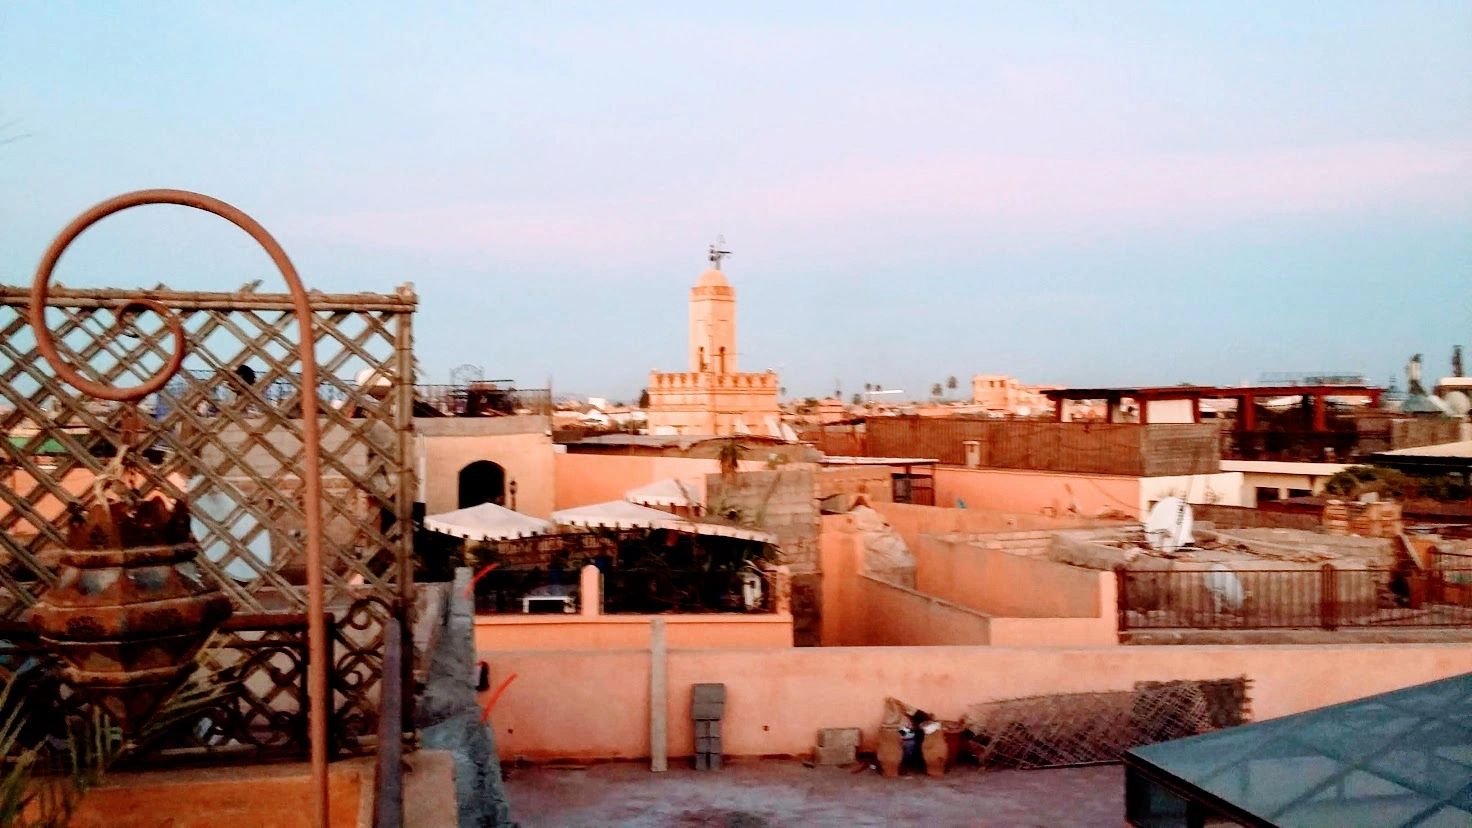 Marrakech Rooftops